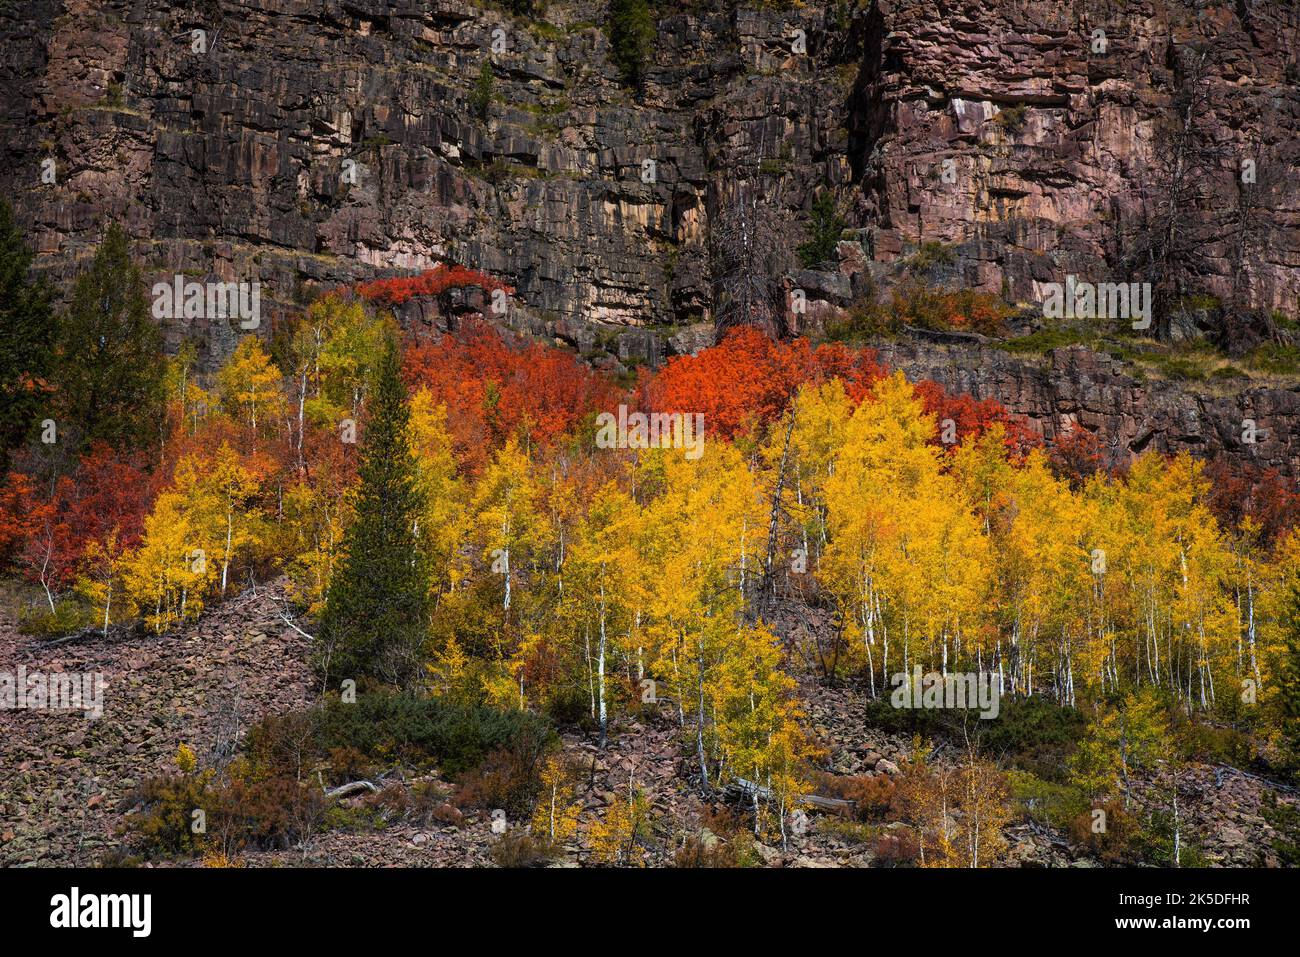 Couleurs d'automne le long de Mirror Lake Hwy. Dans le nord de l'Utah, aux États-Unis. Banque D'Images